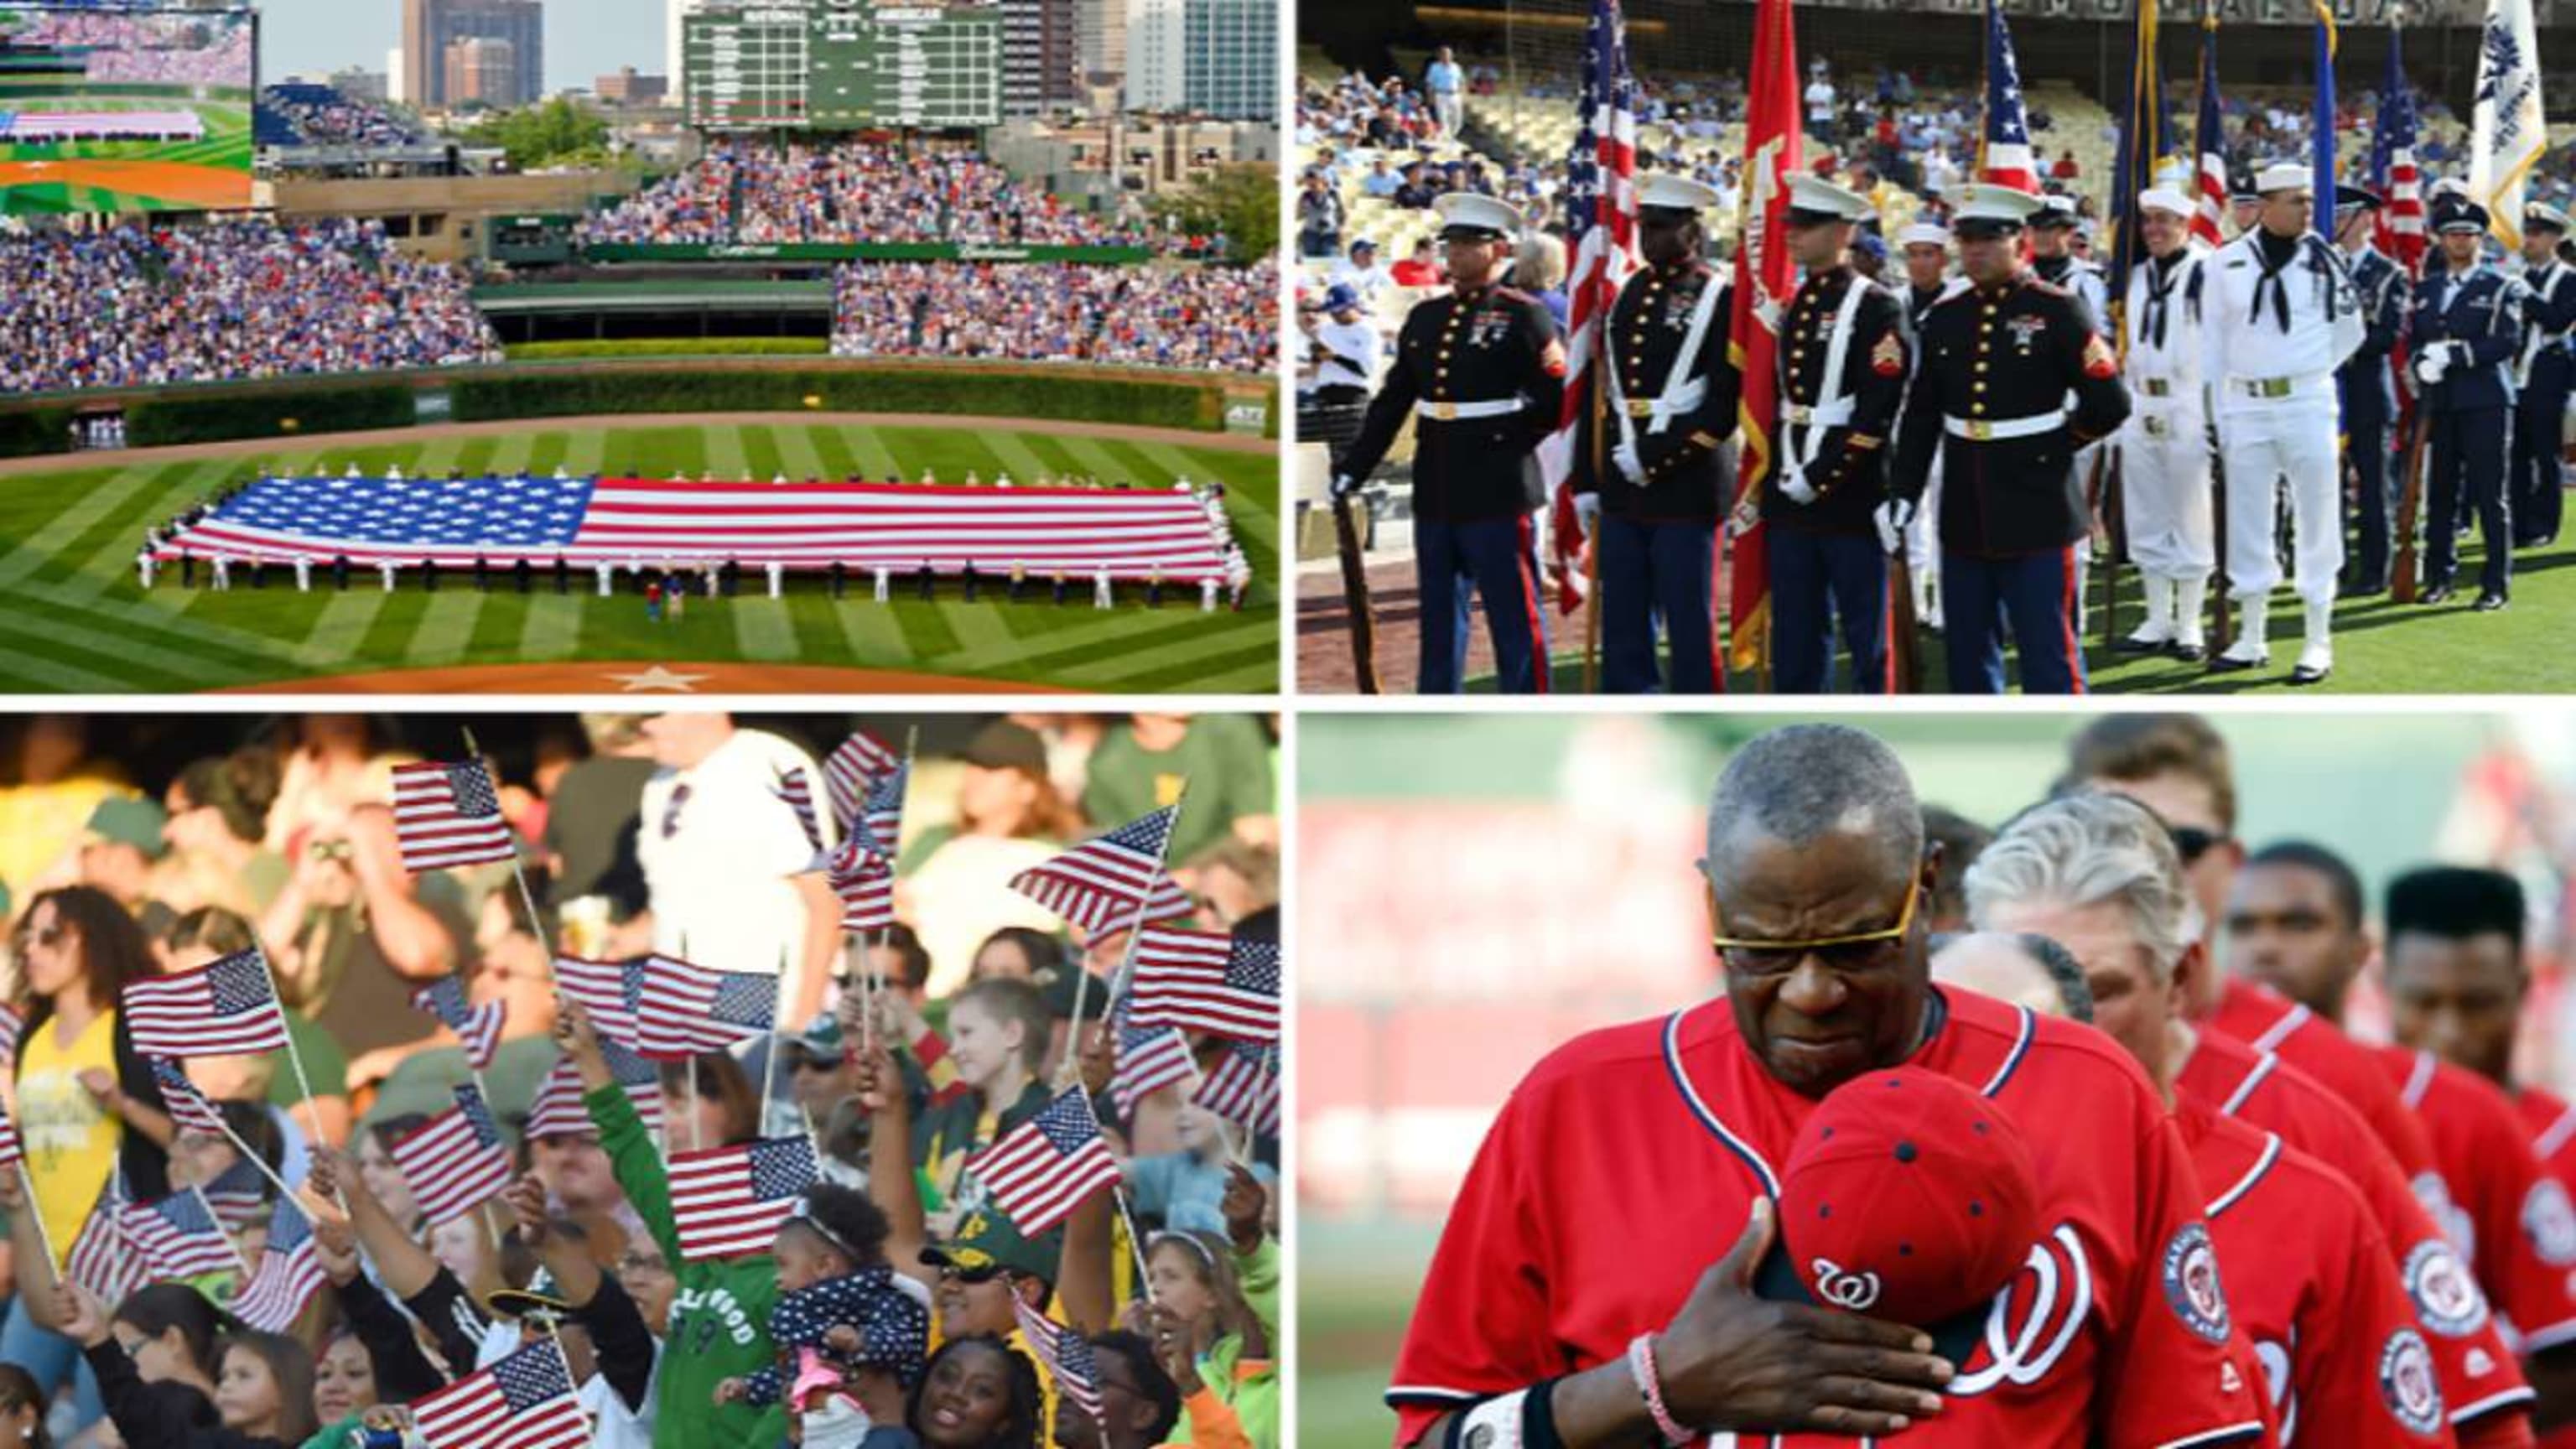 MLB honors veterans at ballparks across the nation